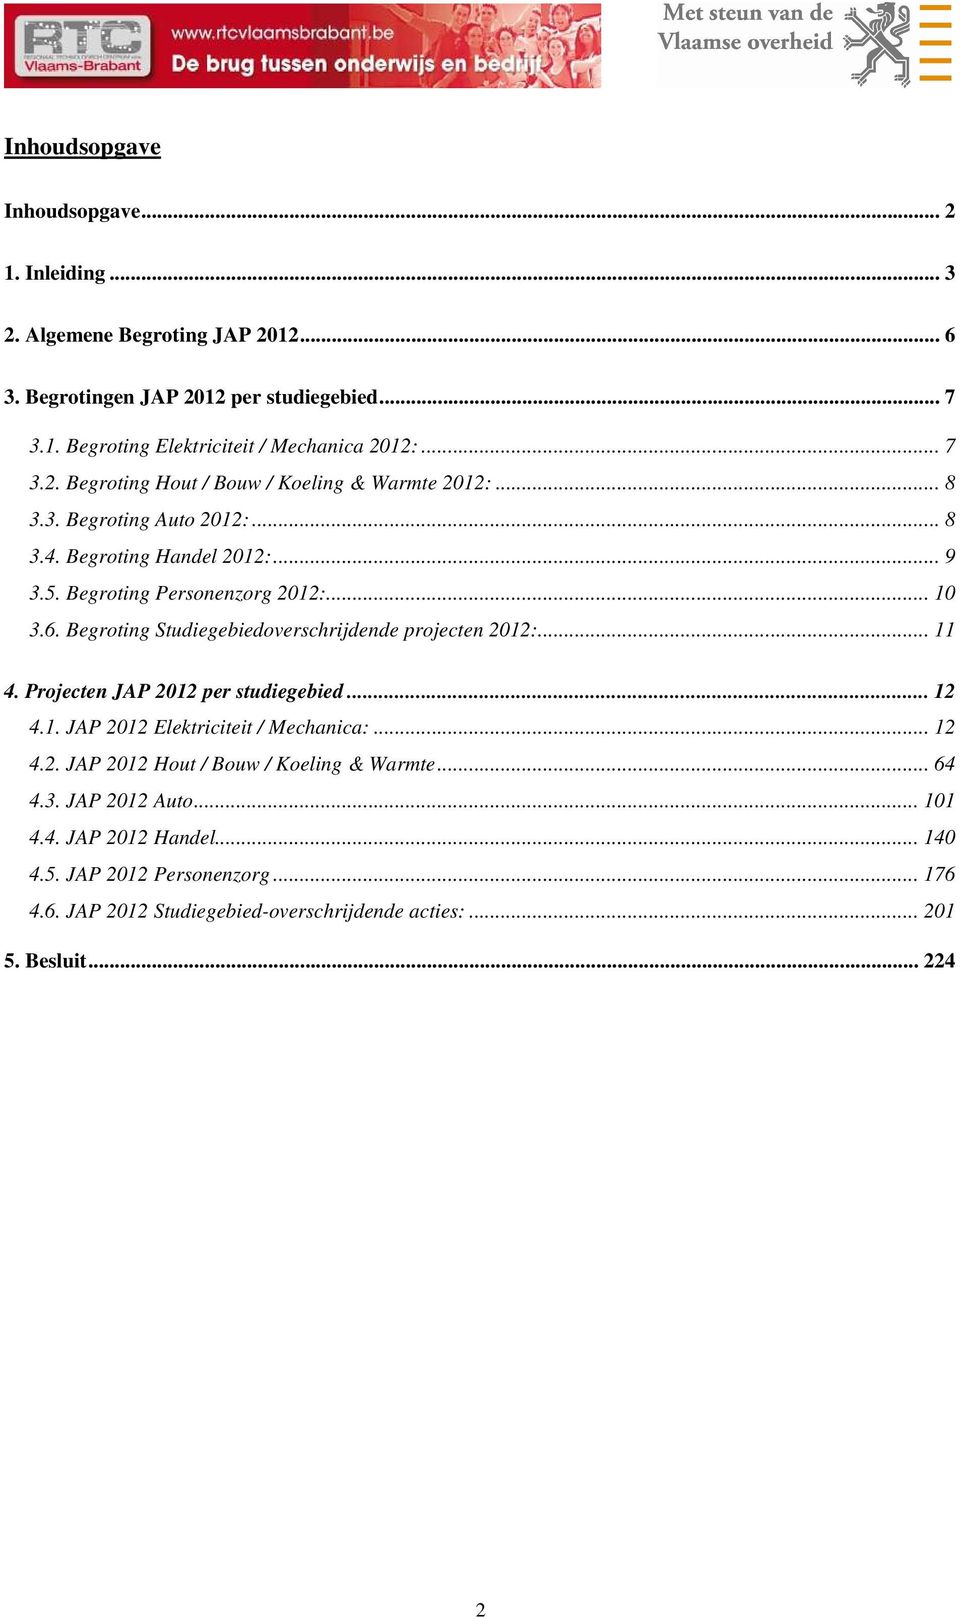 Begroting Studiegebiedoverschrijdende projecten 2012:... 11 4. Projecten JAP 2012 per studiegebied... 12 4.1. JAP 2012 Elektriciteit / Mechanica:... 12 4.2. JAP 2012 Hout / Bouw / Koeling & Warmte.